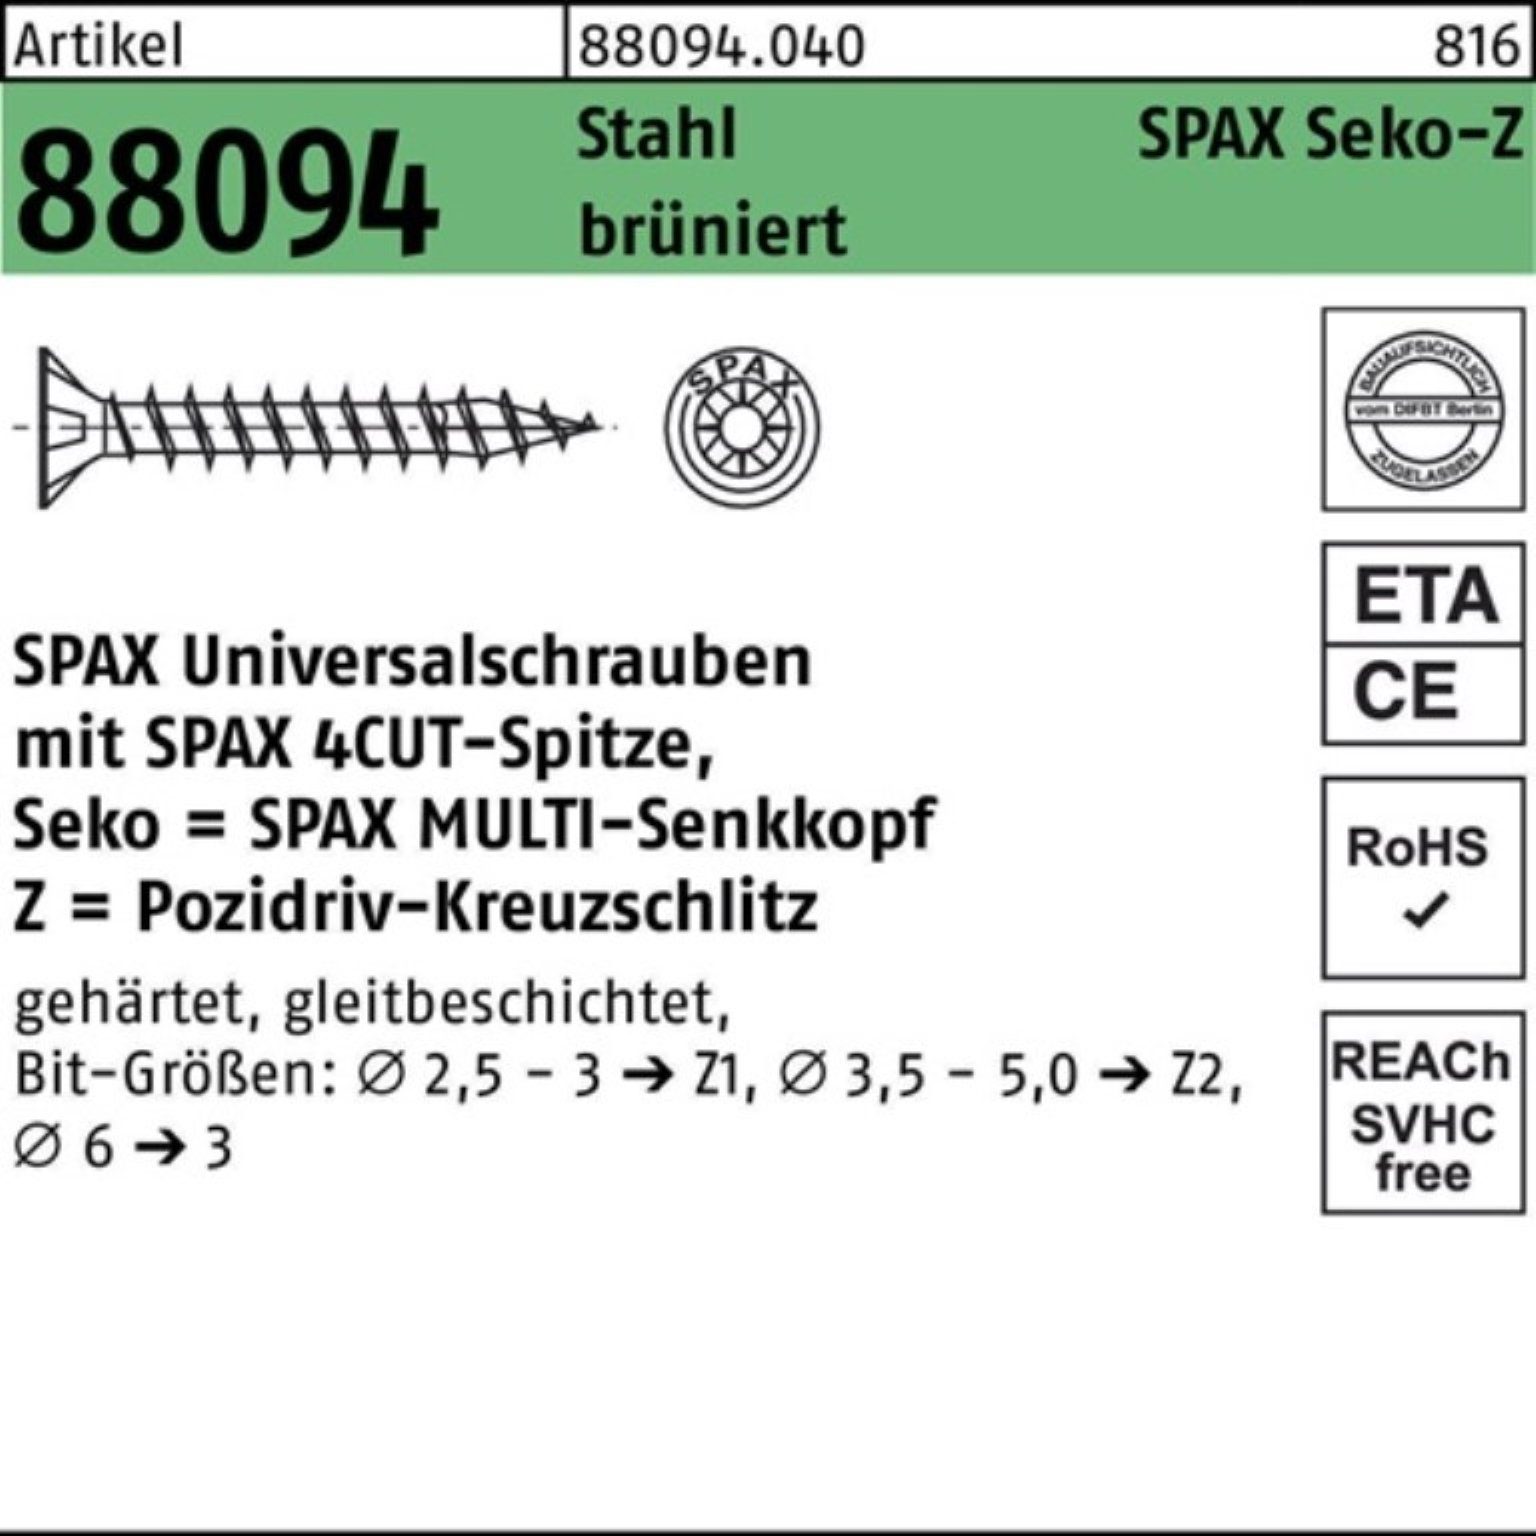 R 200er Spitze/PZ SEKO SPAX 5x90/60-Z 88094 Stahl Schraube brüniert 2 Schraube Pack